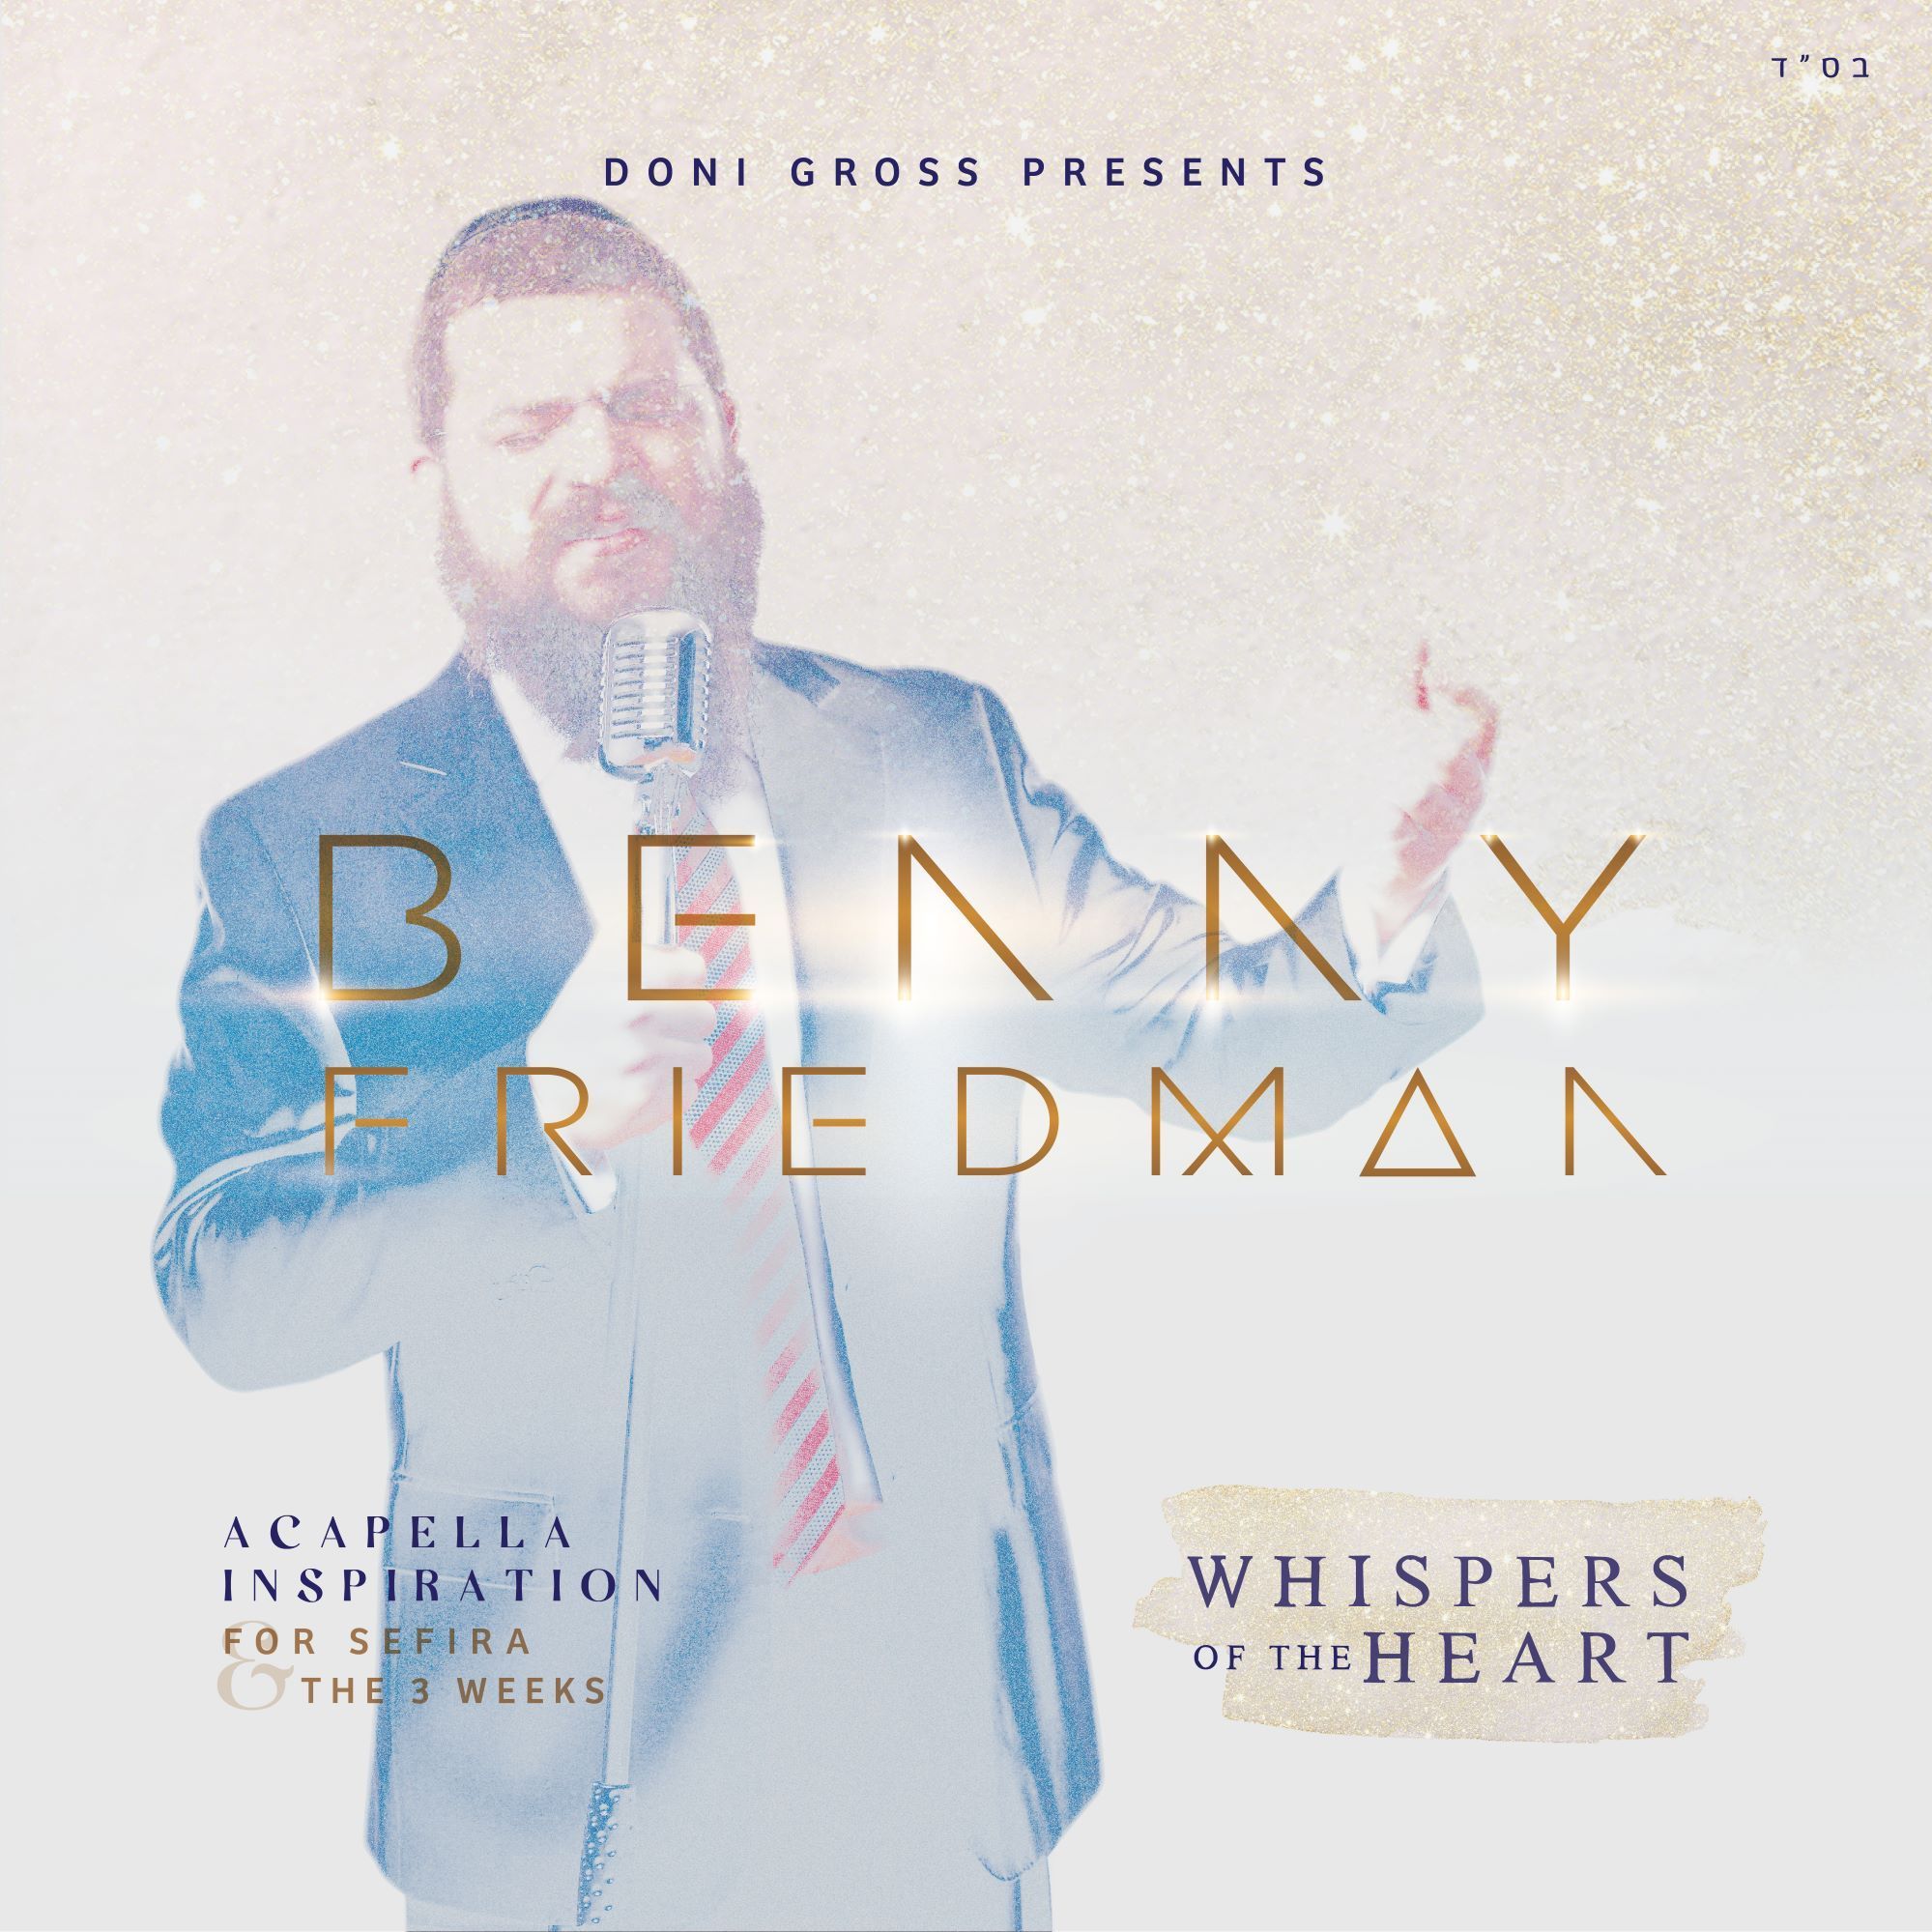 בני פרידמן לחישות הלב - אלבום חדש - Benny Friedman - Whispers Of The Heart